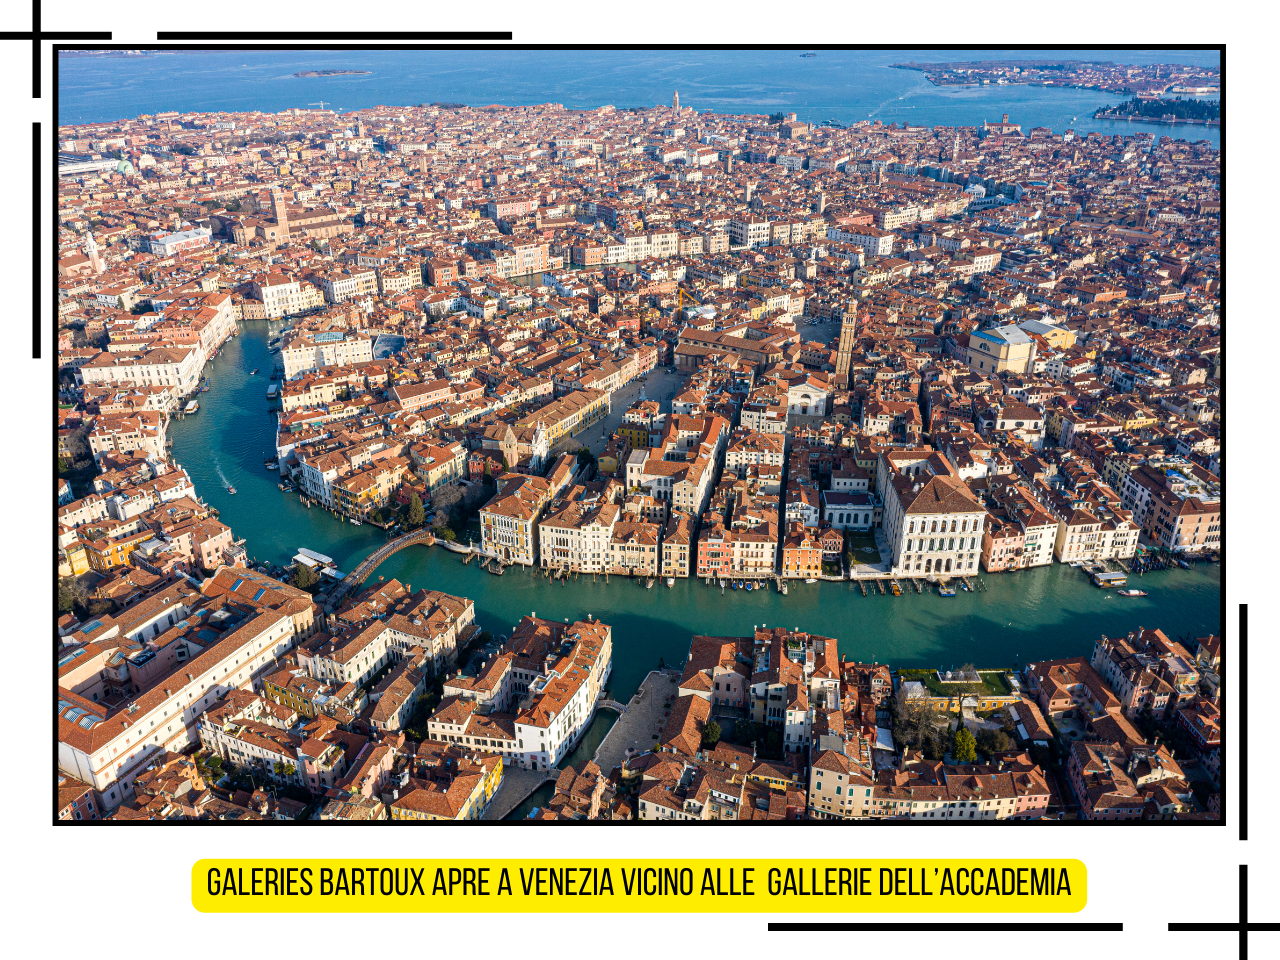 Spazi artistici rinnovati Venezia - Due luoghi vicino alle Gallerie dell'Accademia rinascono grazie al gruppo Galeries Bartoux